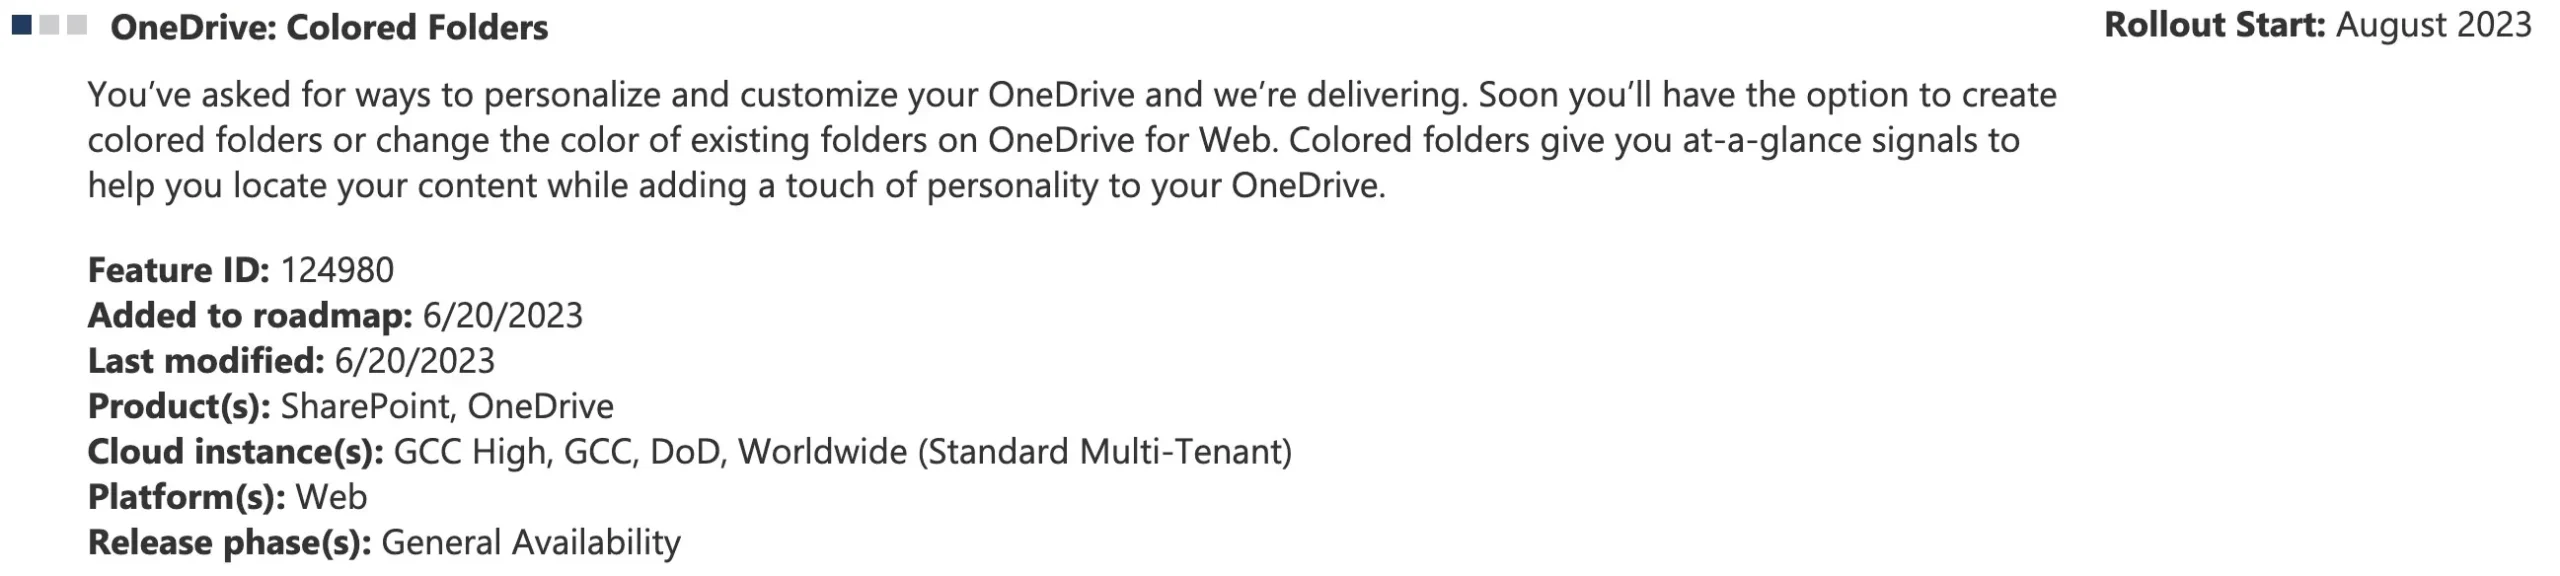 Dossiers colorés dans OneDrive